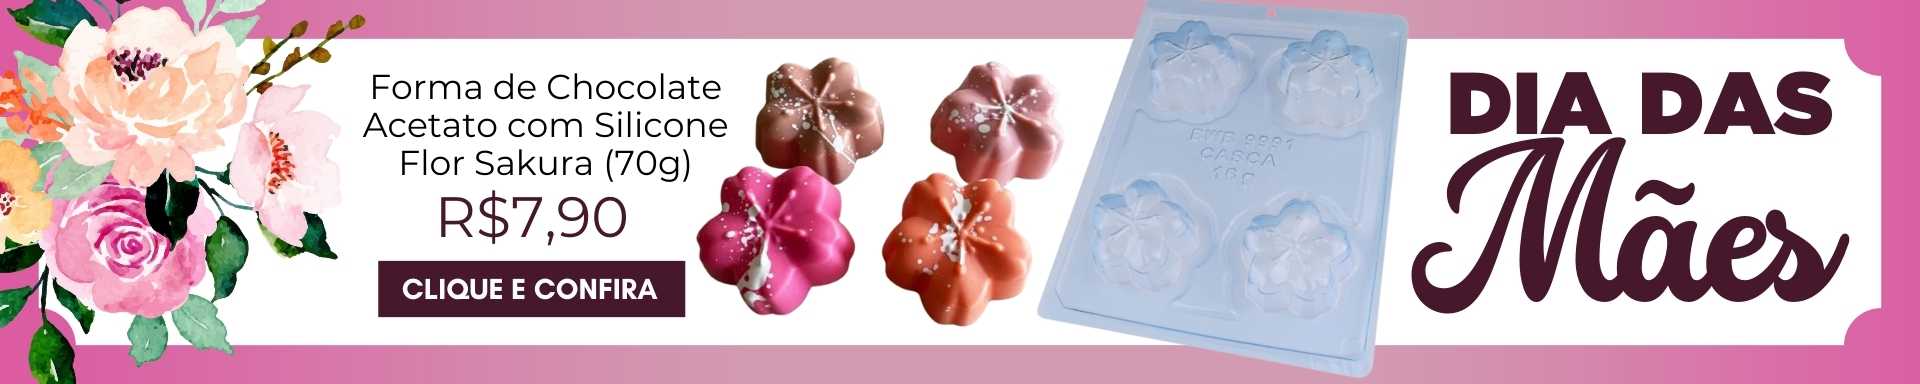 Dia das Mães | Forma de Chocolate Acetato com Silicone Flor Sakura (70g) - BWB por R$7,90 | BarraDoce